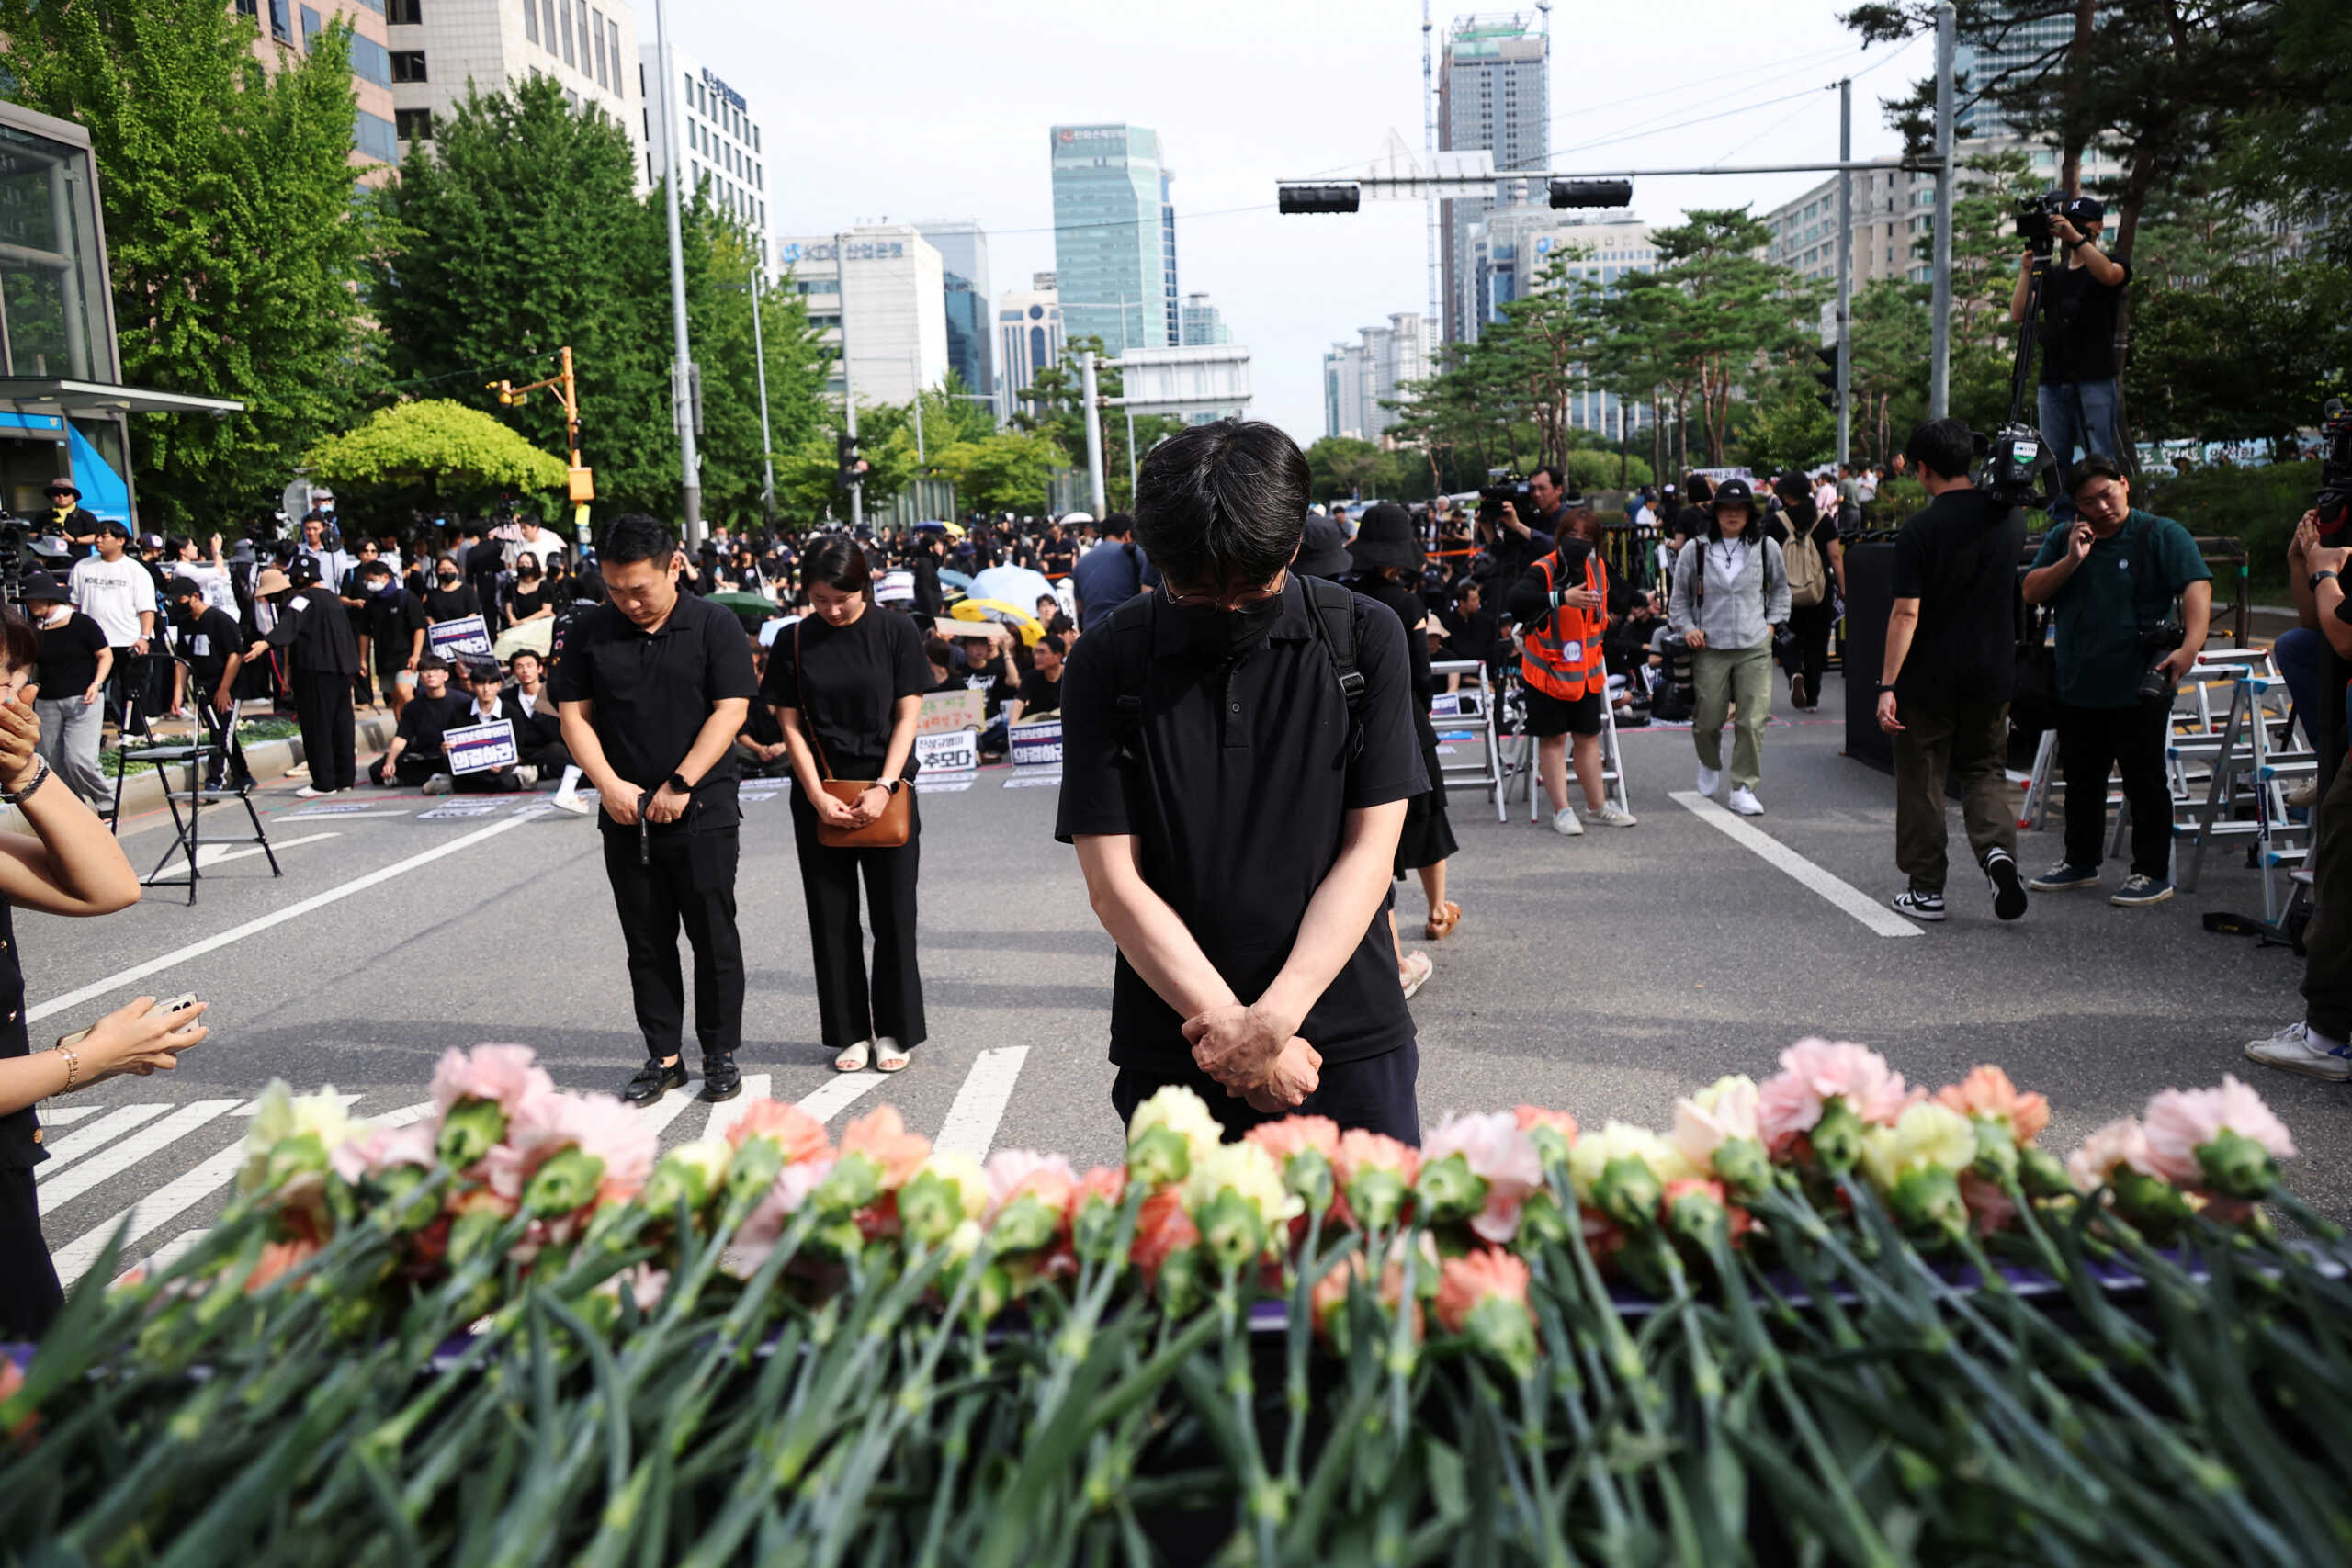 Νότια Κορέα: Εκπαιδευτικοί αυτοκτονούν γιατί δέχονται υπερβολικές πιέσεις από φορτικούς γονείς